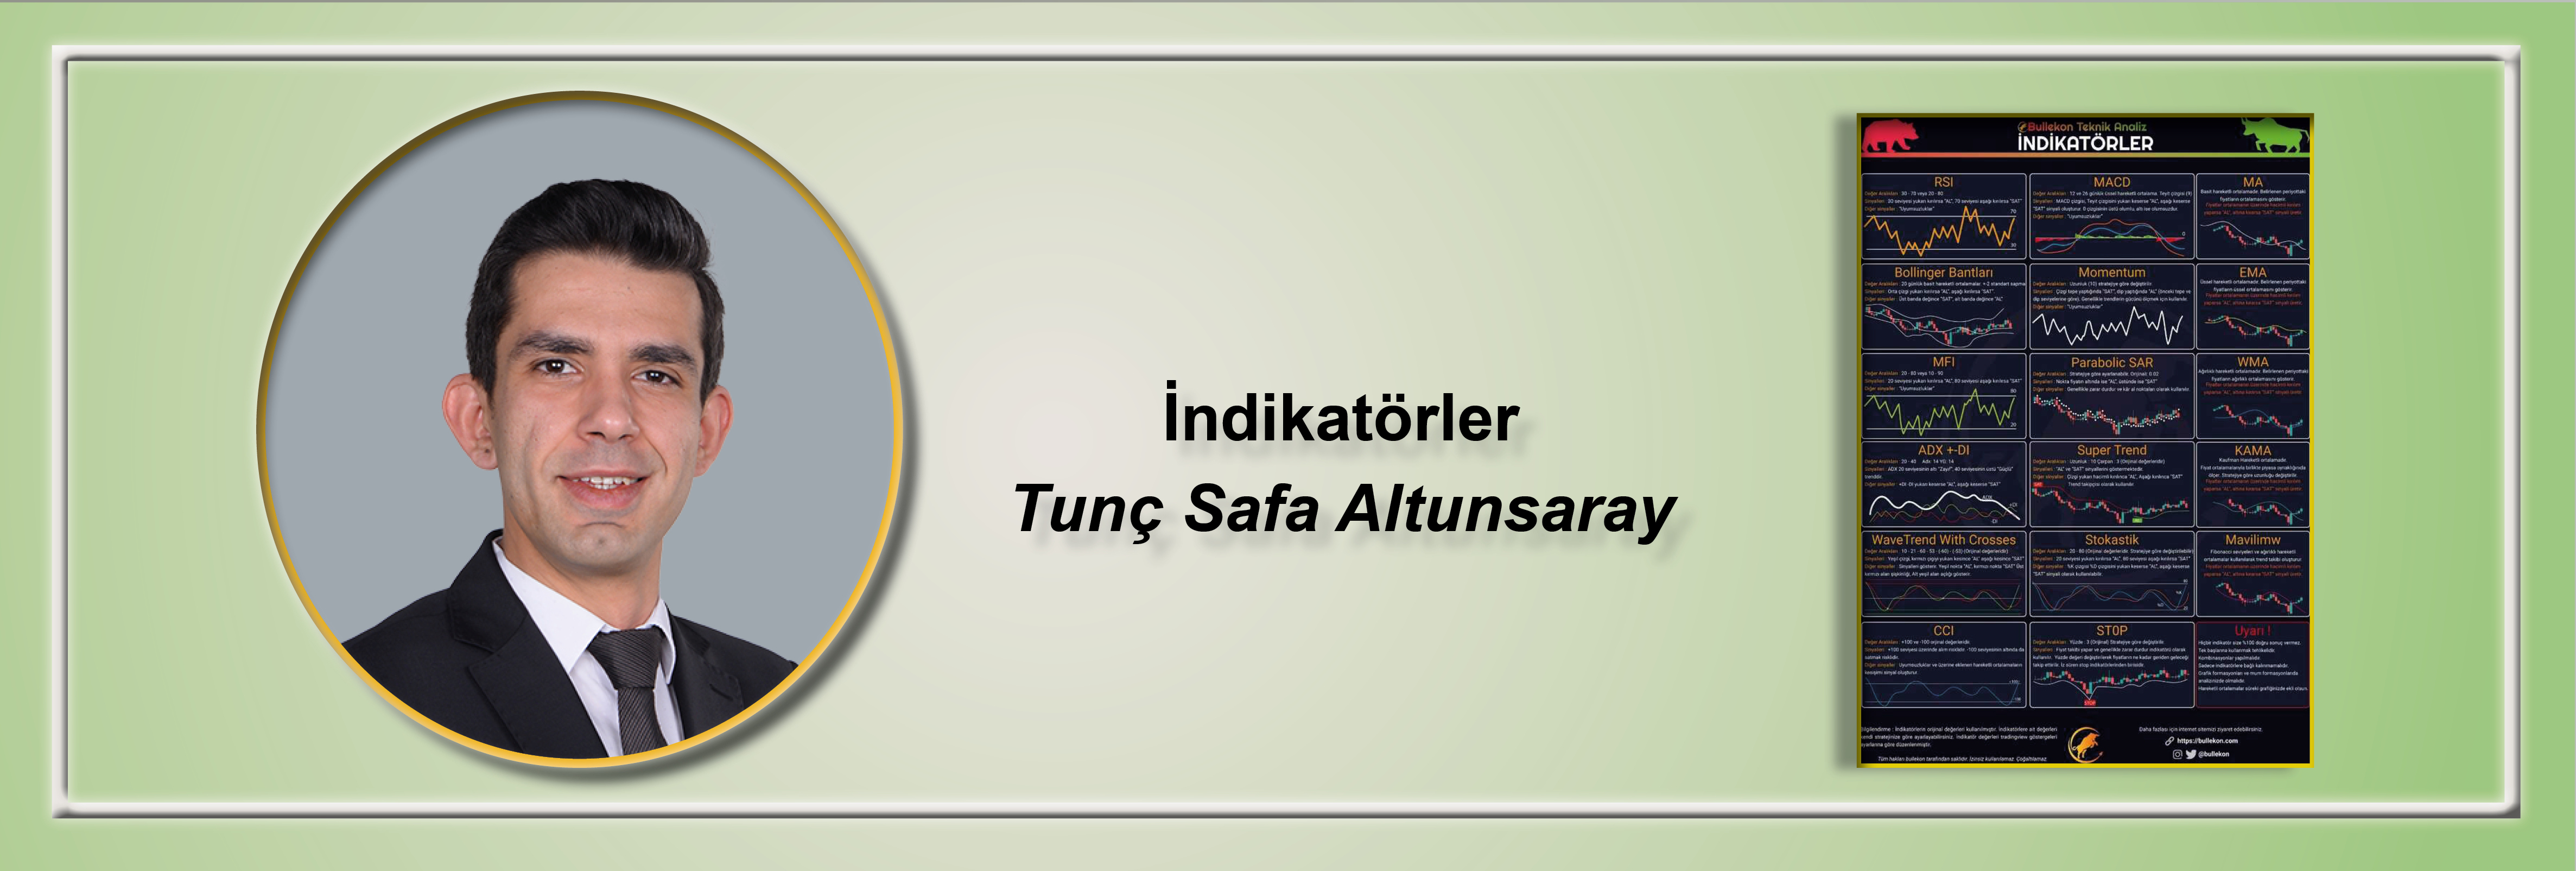 indikatorler-tunc-safa-altunsaray